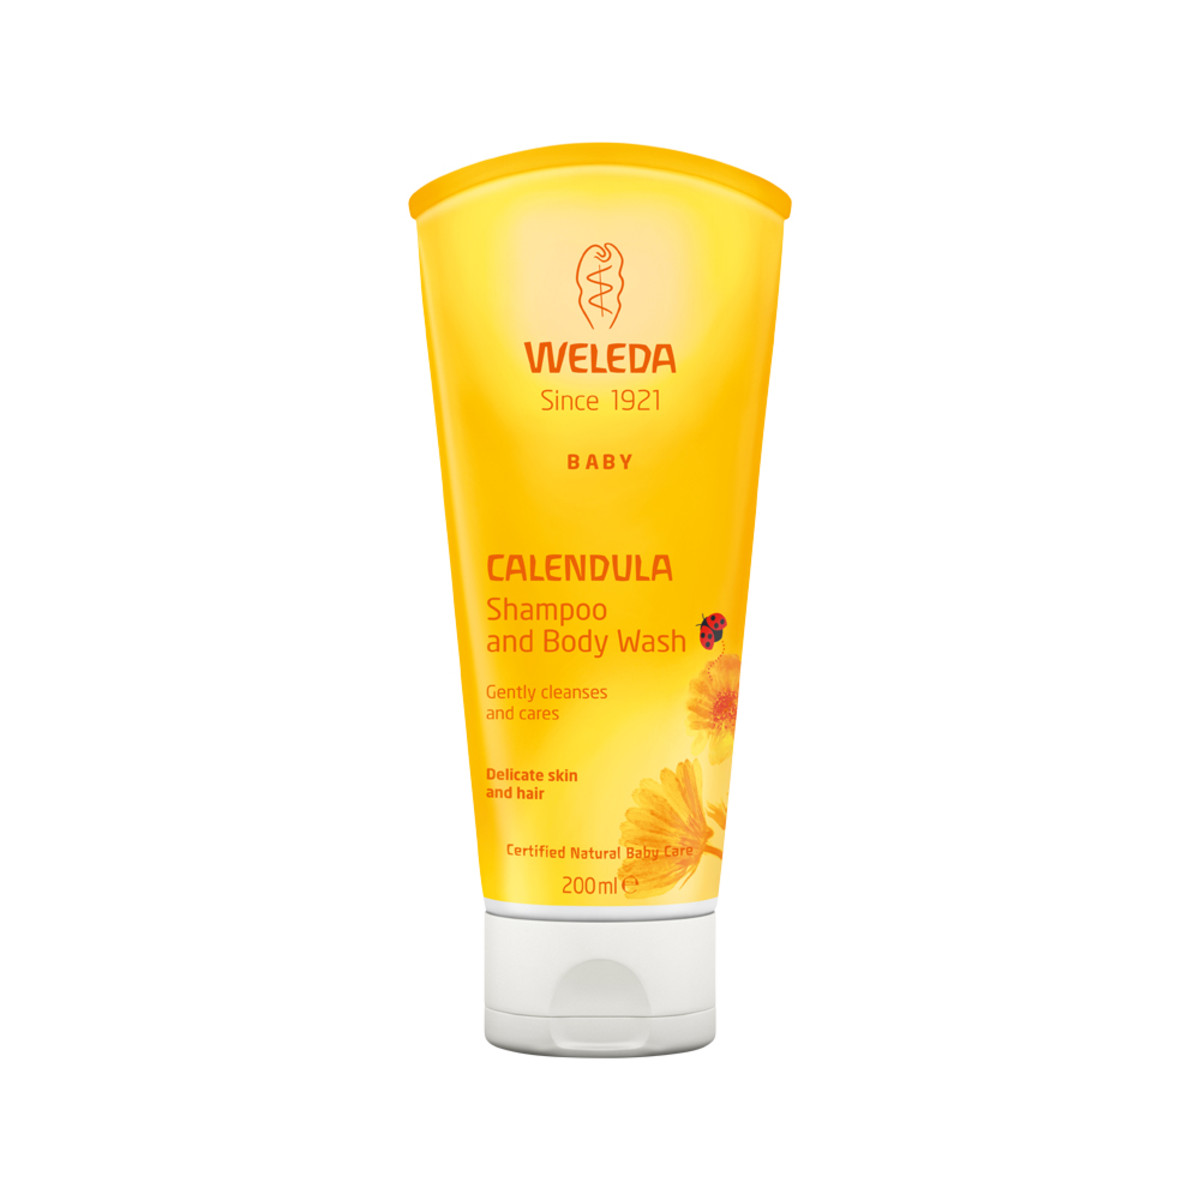 WELEDA - Baby Shampoo and Body Wash Calendula